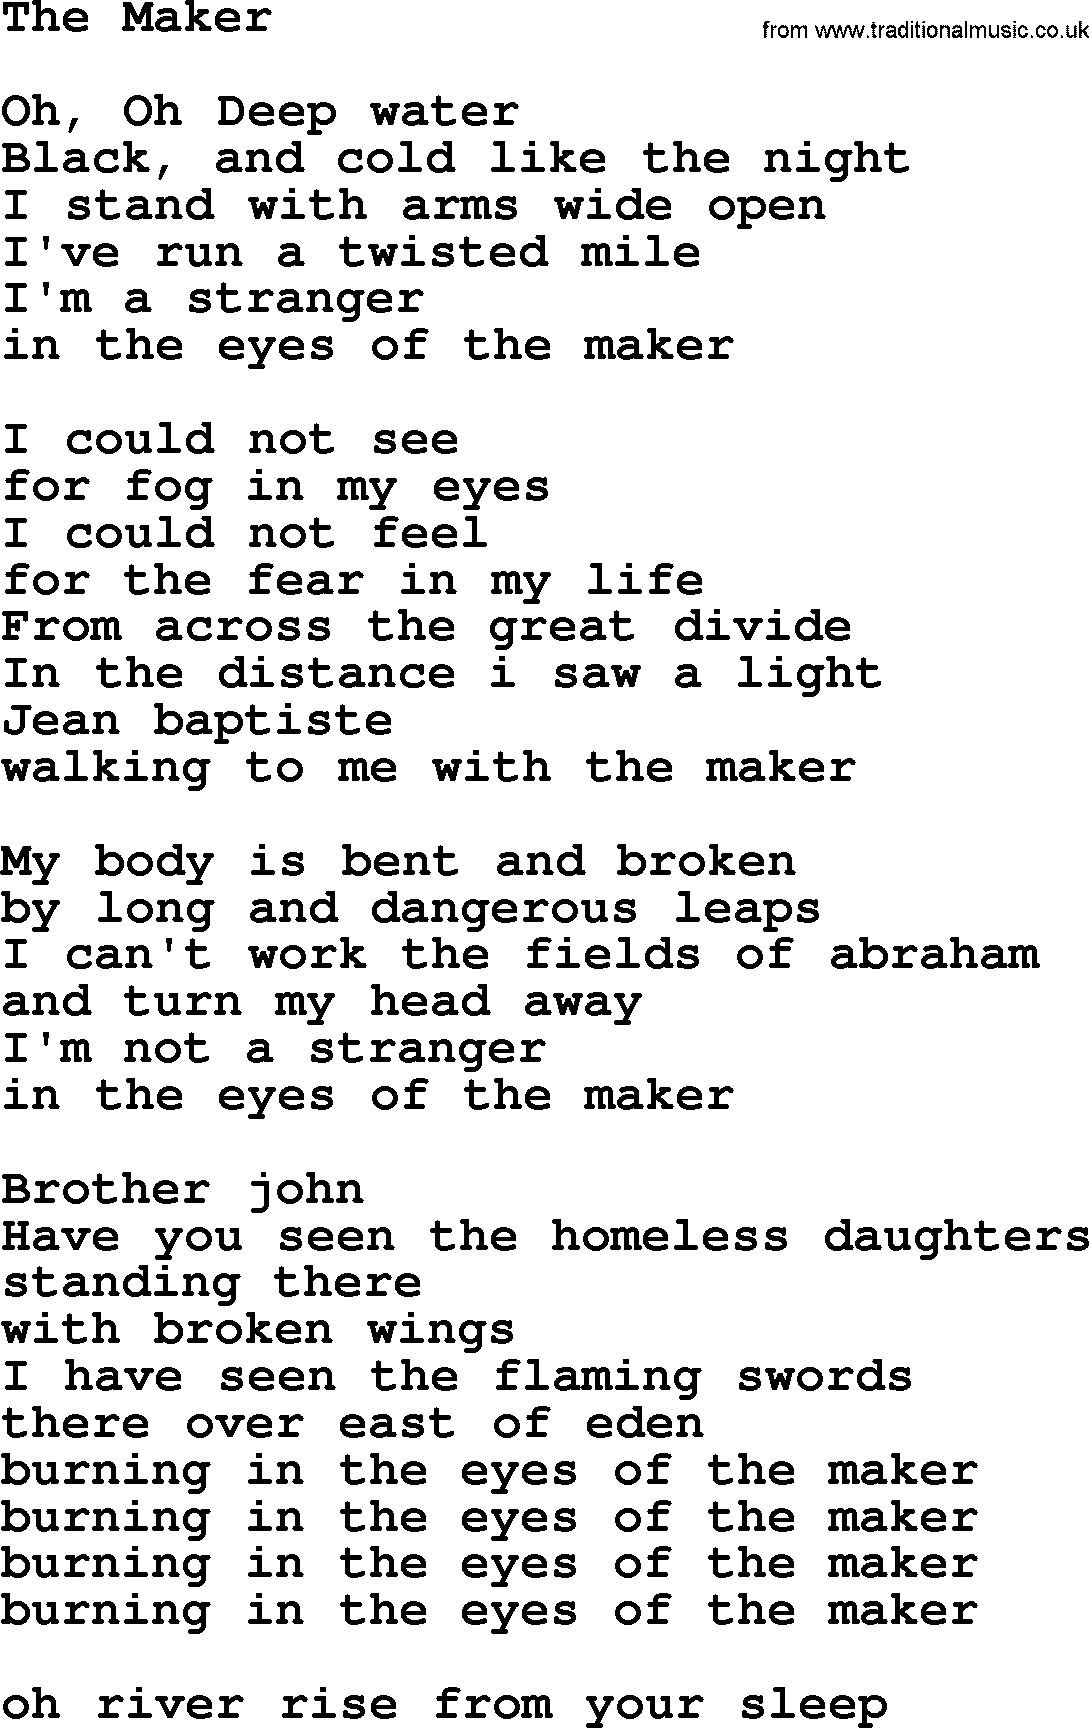 Willie Nelson song: The Maker lyrics